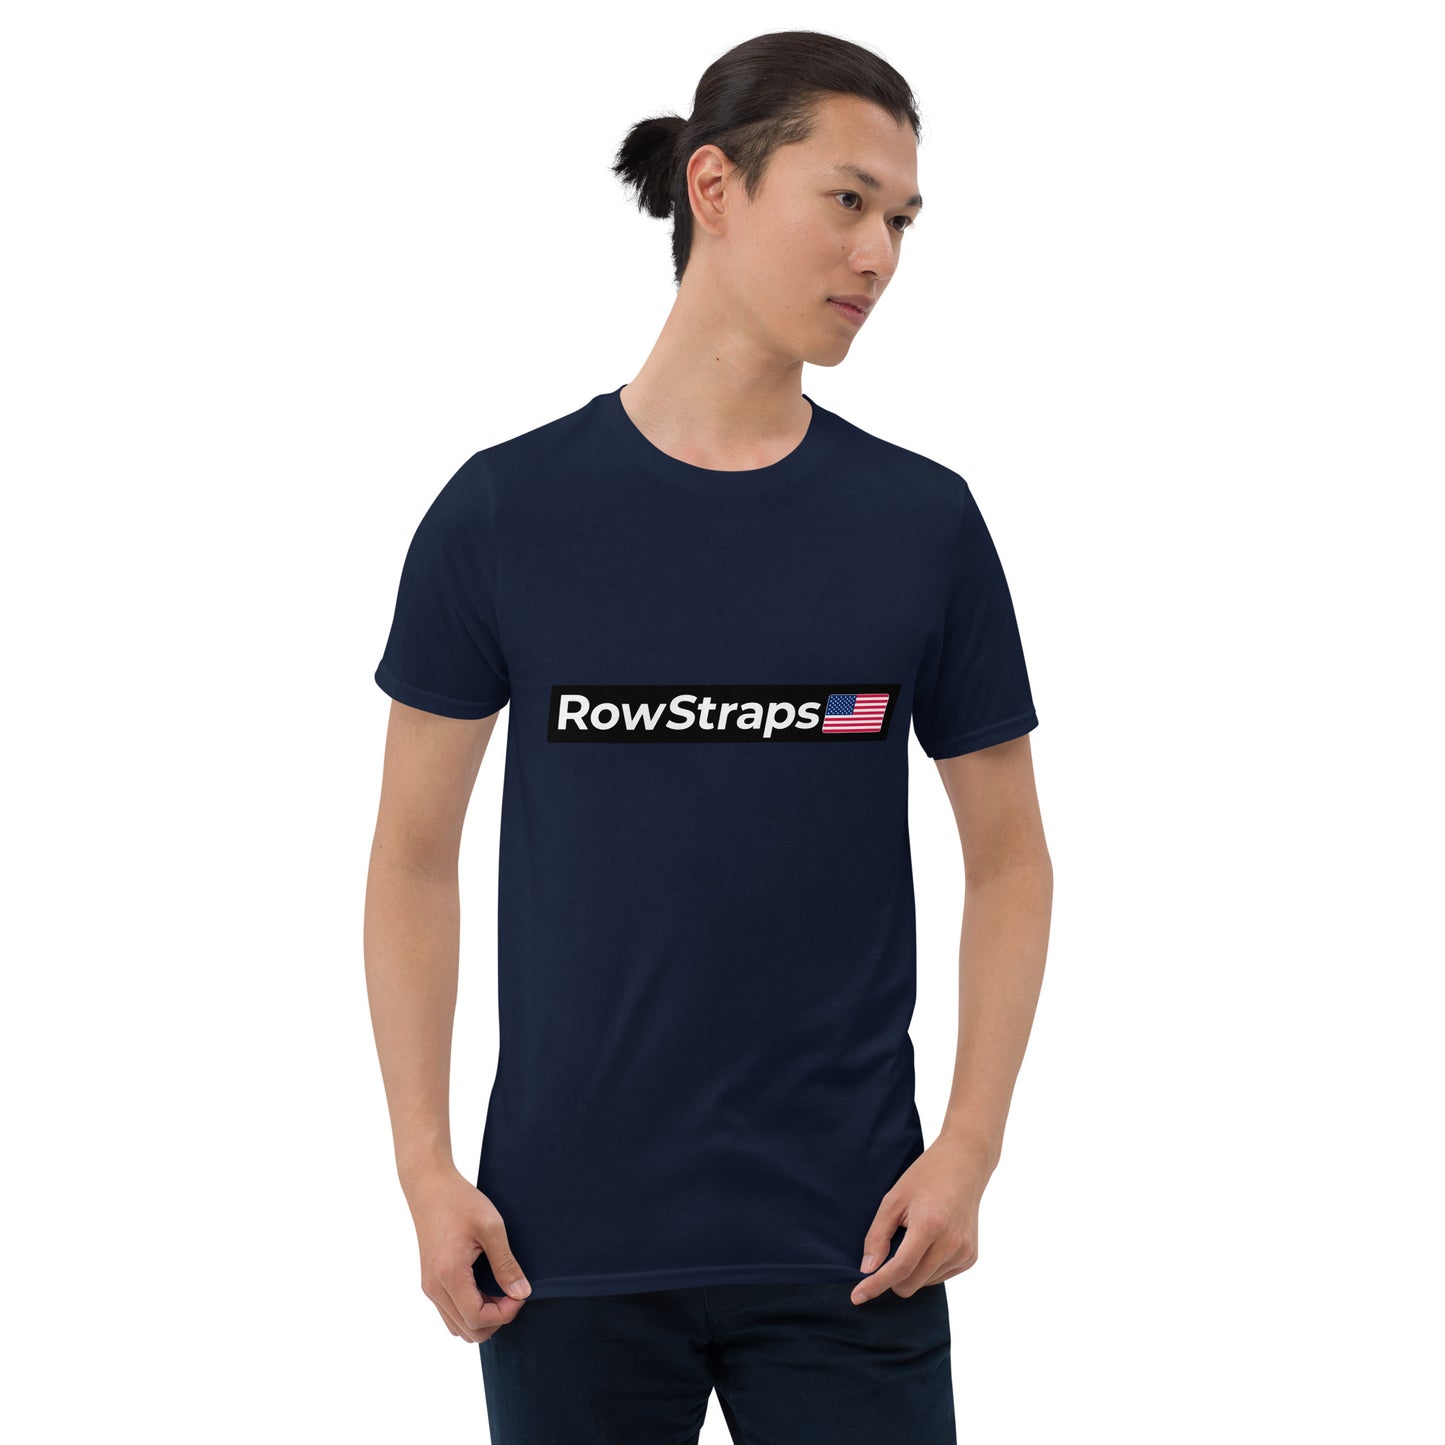 RowStraps Logo White-on-Black T-Shirt